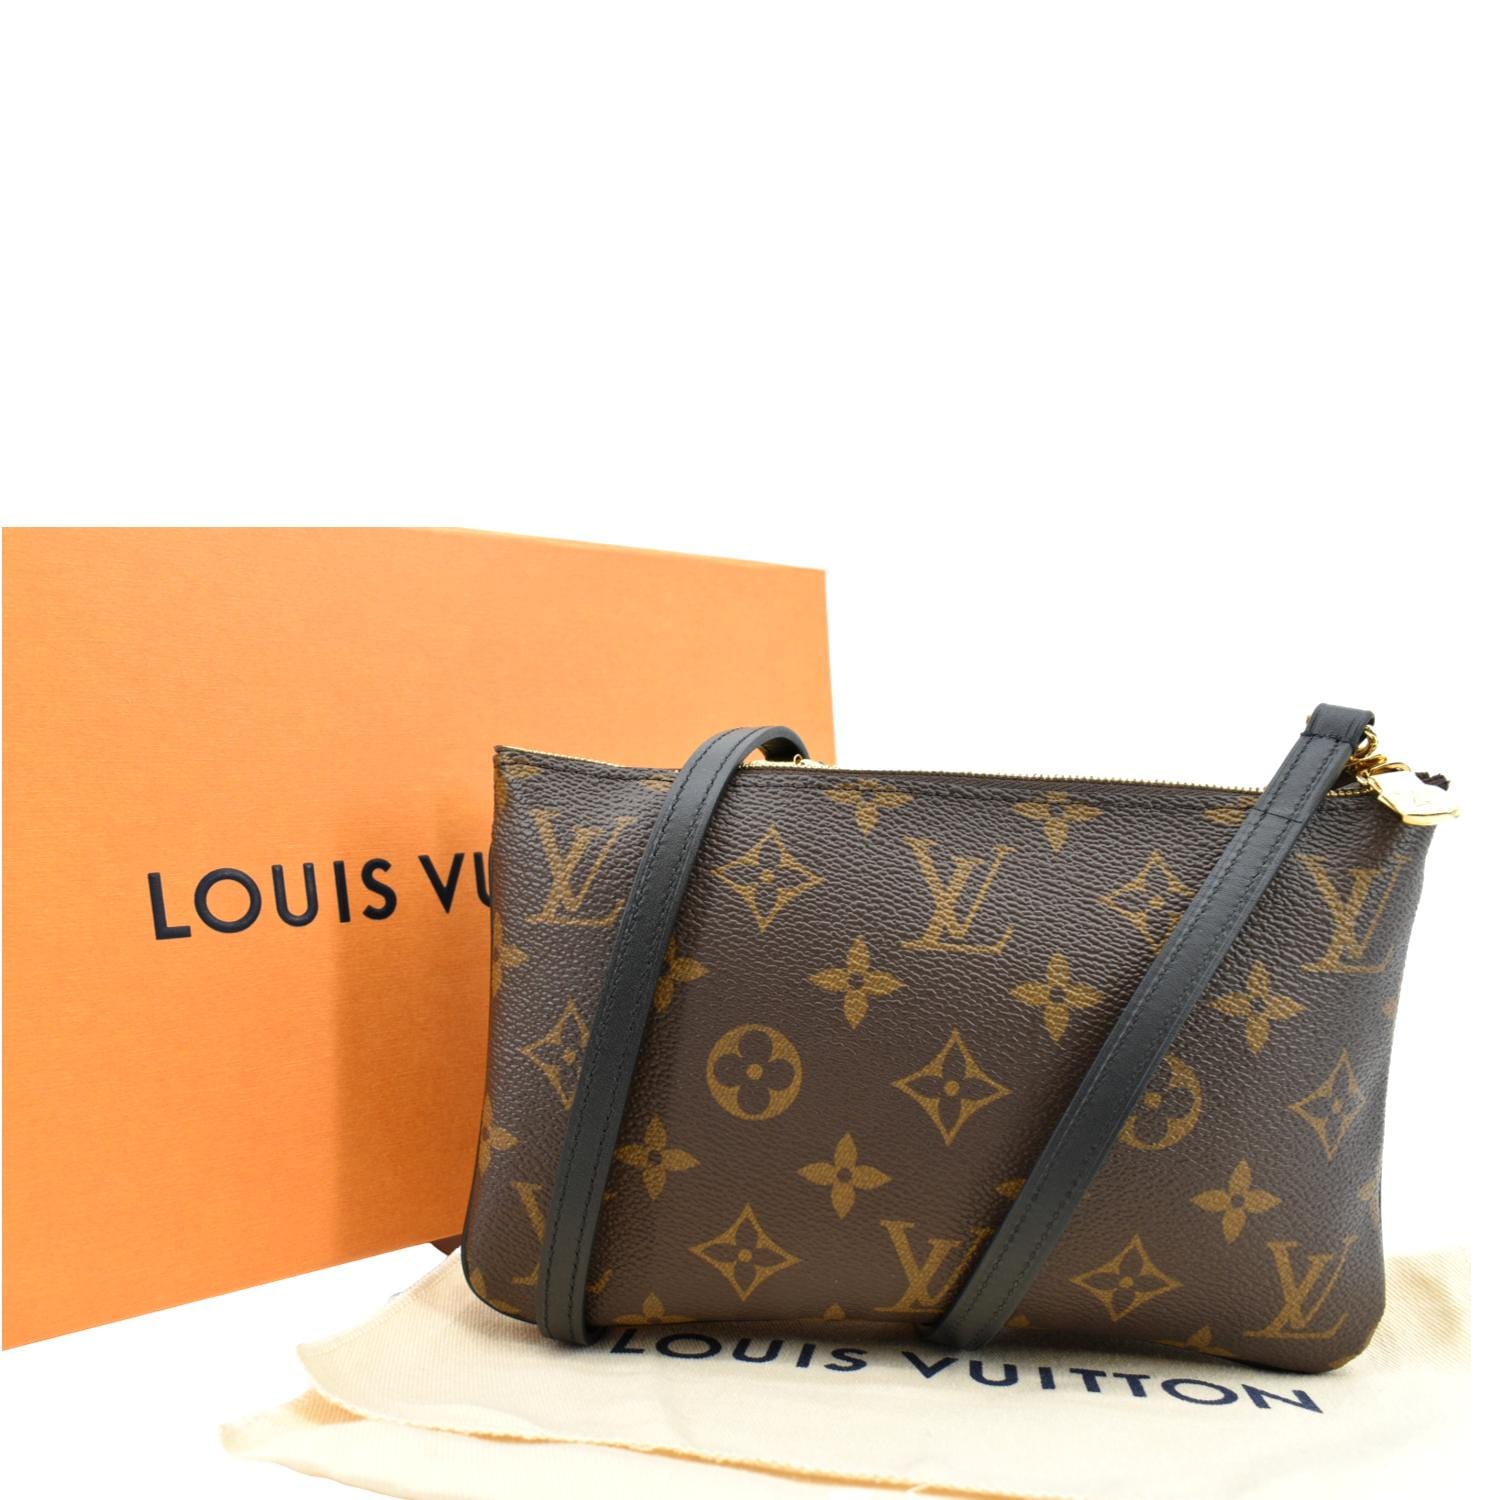 UNBOXING Louis Vuitton Double Zip Pochette Giant Monogram Reverse  #luxurypl38 #louisvuitton 